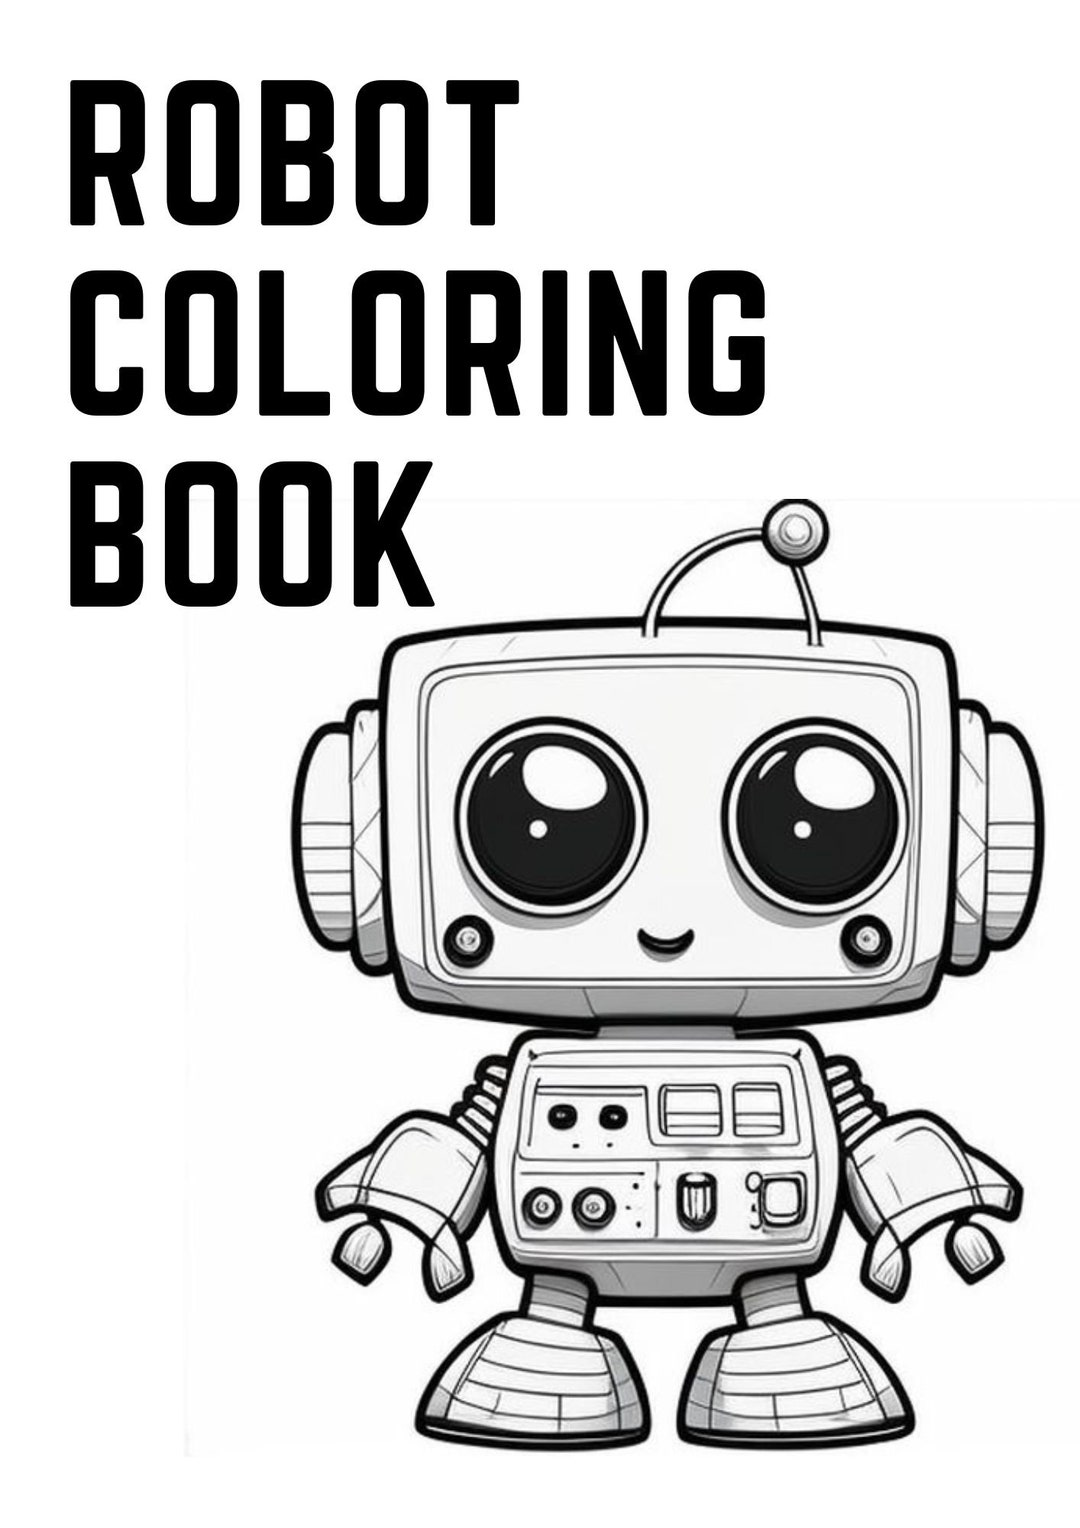 Comprar The Brilliant Coloring Book For Boys:: Robot Coloring Book